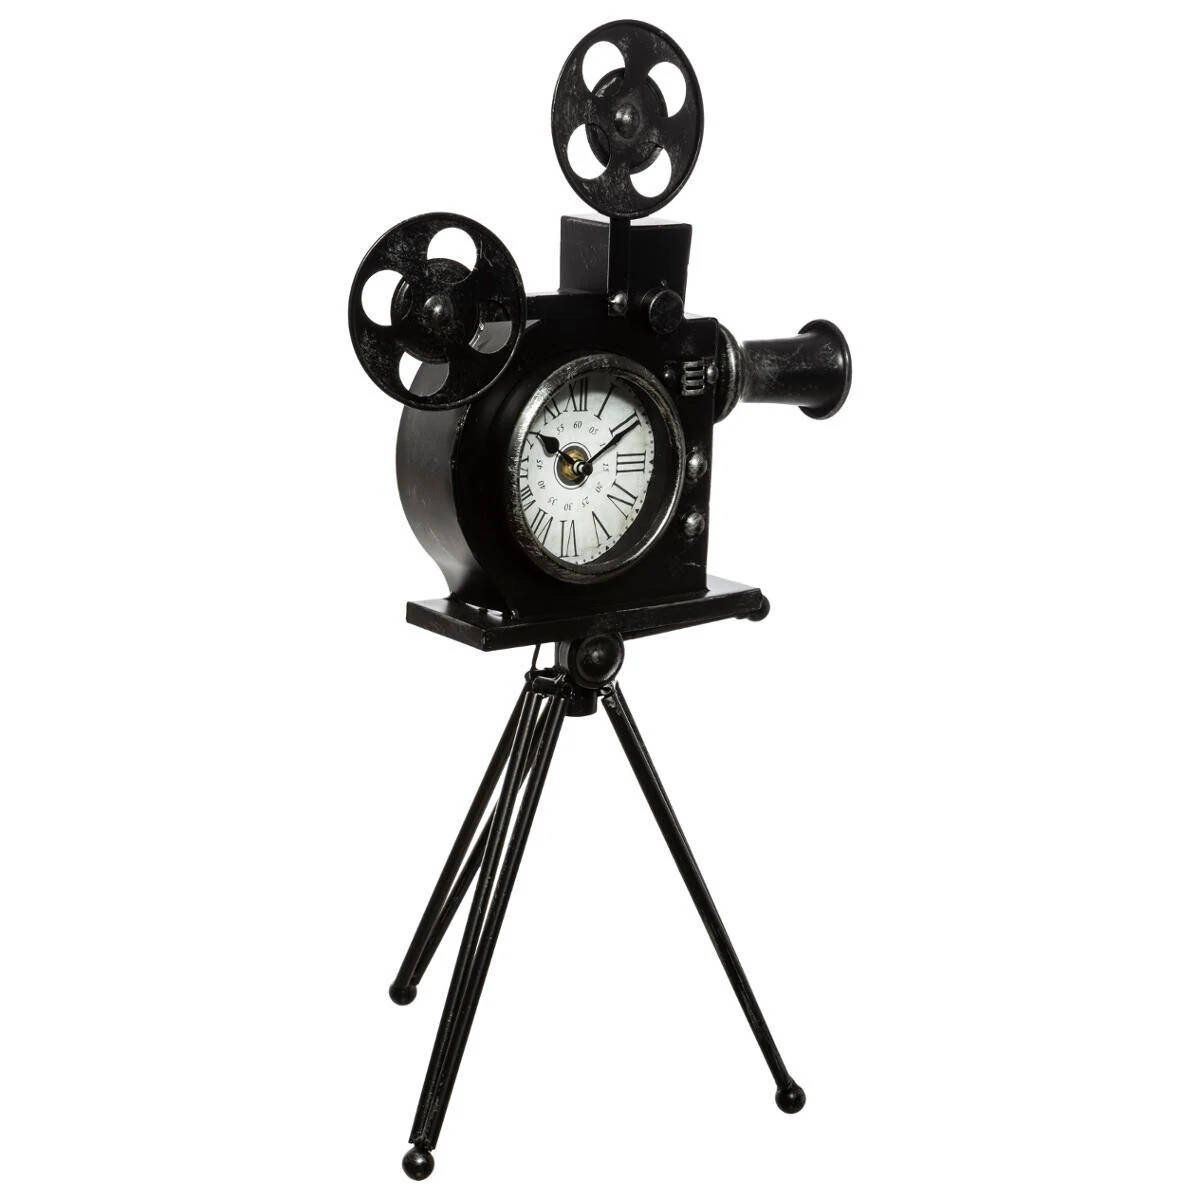 Atmosphera Dekorativní hodiny KAMERA, výška 51,5 cm, černé - EDAXO.CZ s.r.o.